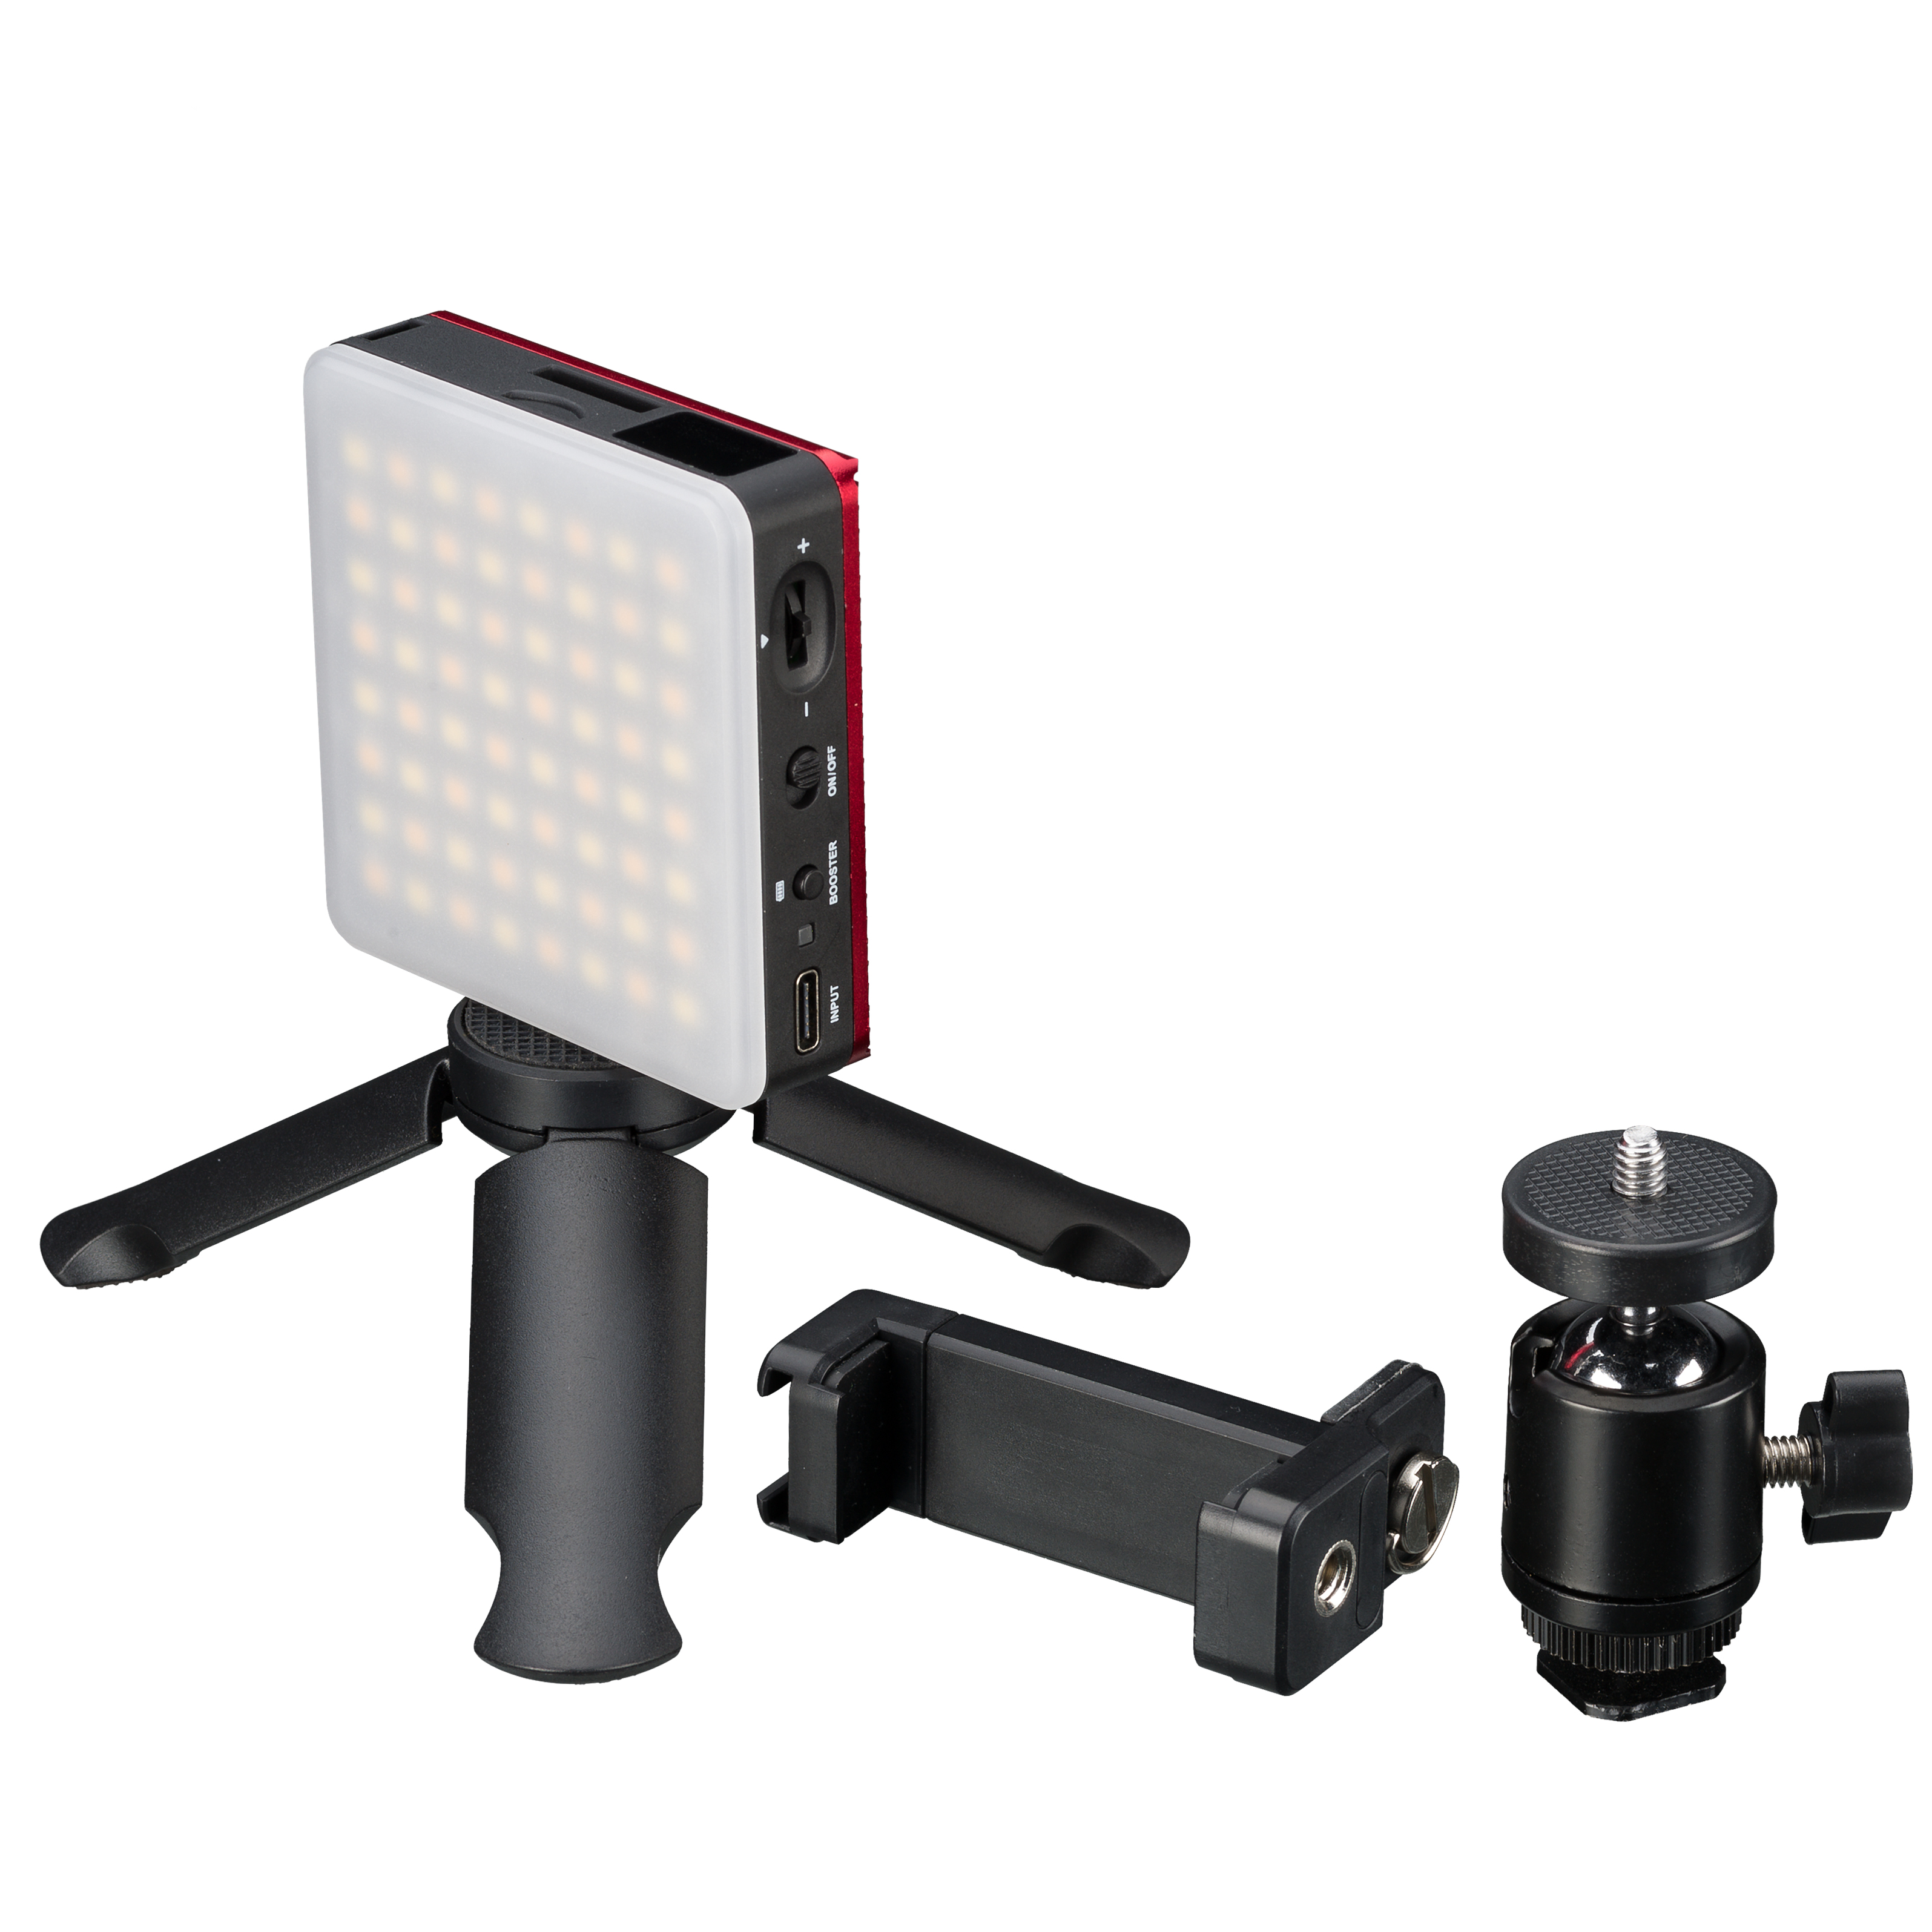 BRESSER Pocket LED 5W Bi-Color Dauerlicht für den mobilen Einsatz und Smartphone-Fotografie